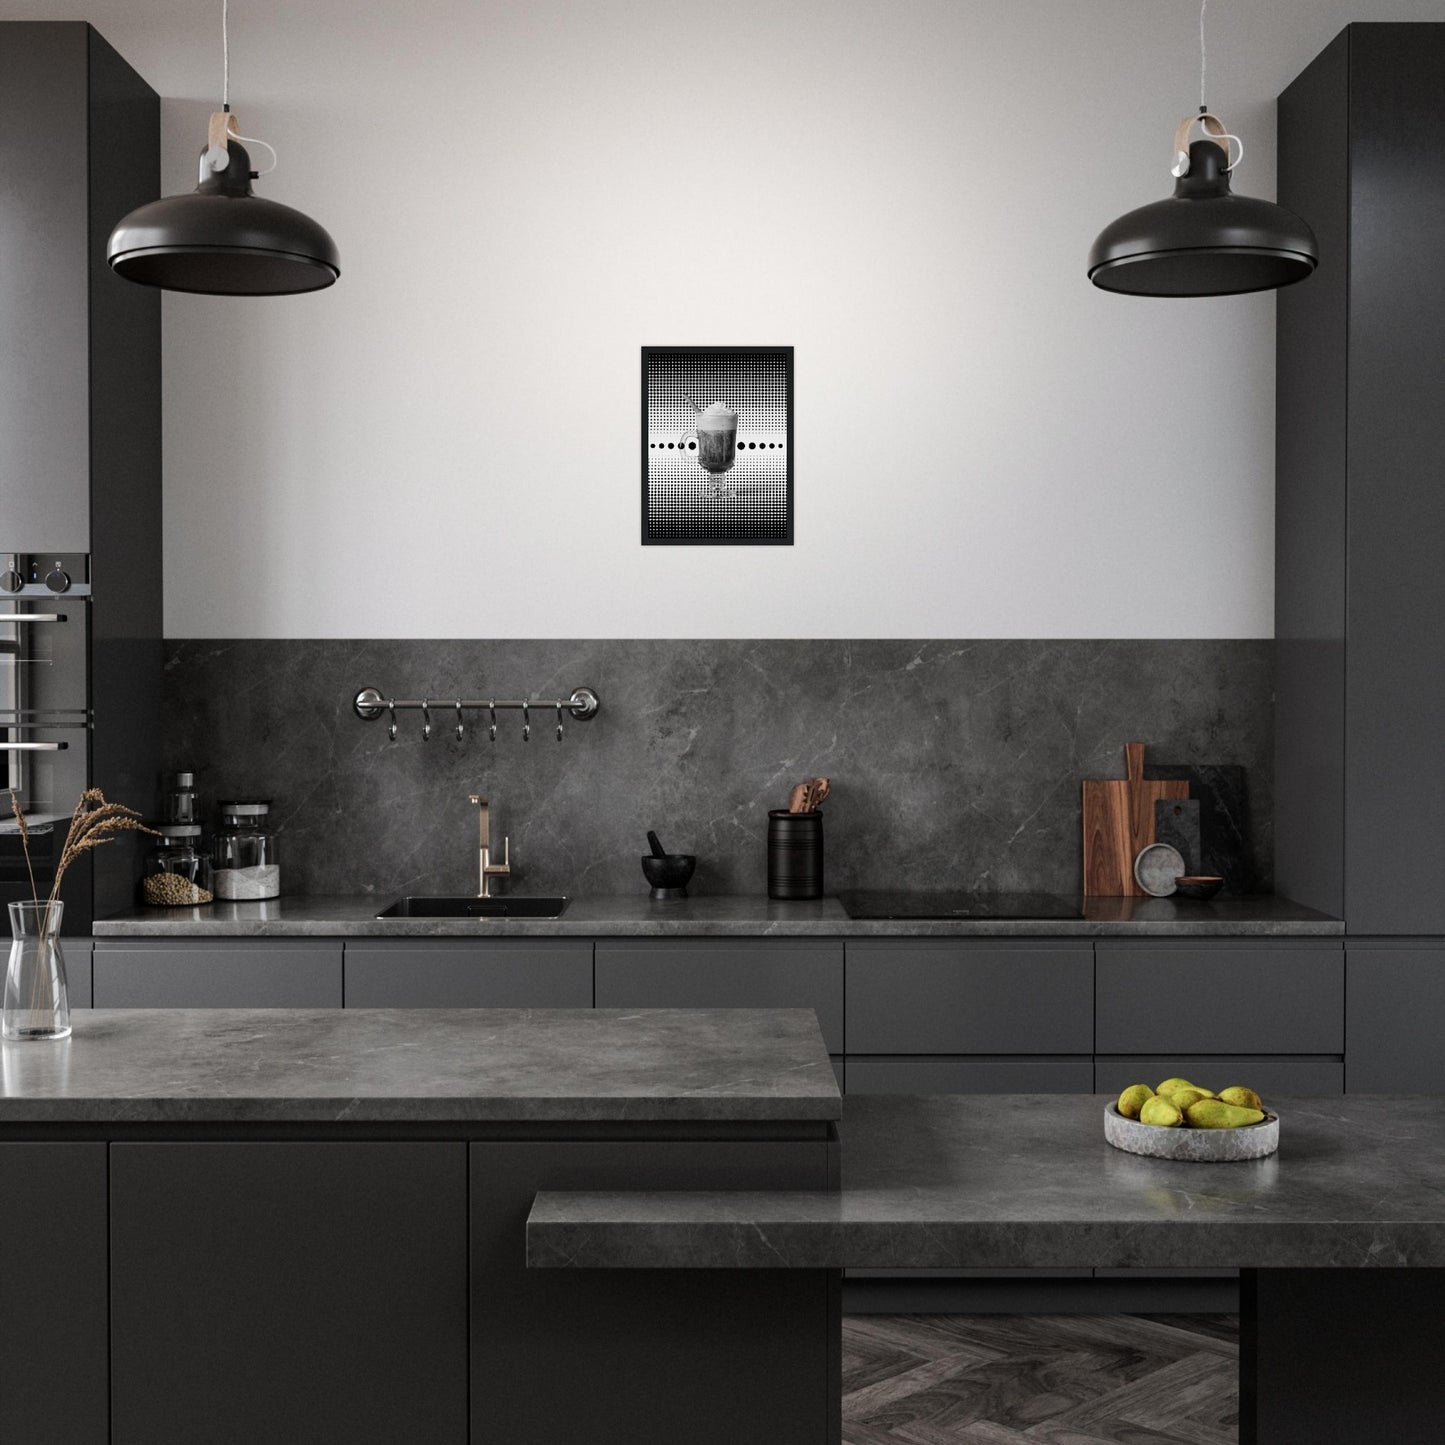 Bild im schwarzem Rahmen mit einem Schwarz weißem Motiv aus schwarzen punkten auf einem weißen Untergrund gepaart eines Schwarzweiß Foto eines Cappuccino an der wand einer modernen Küche.